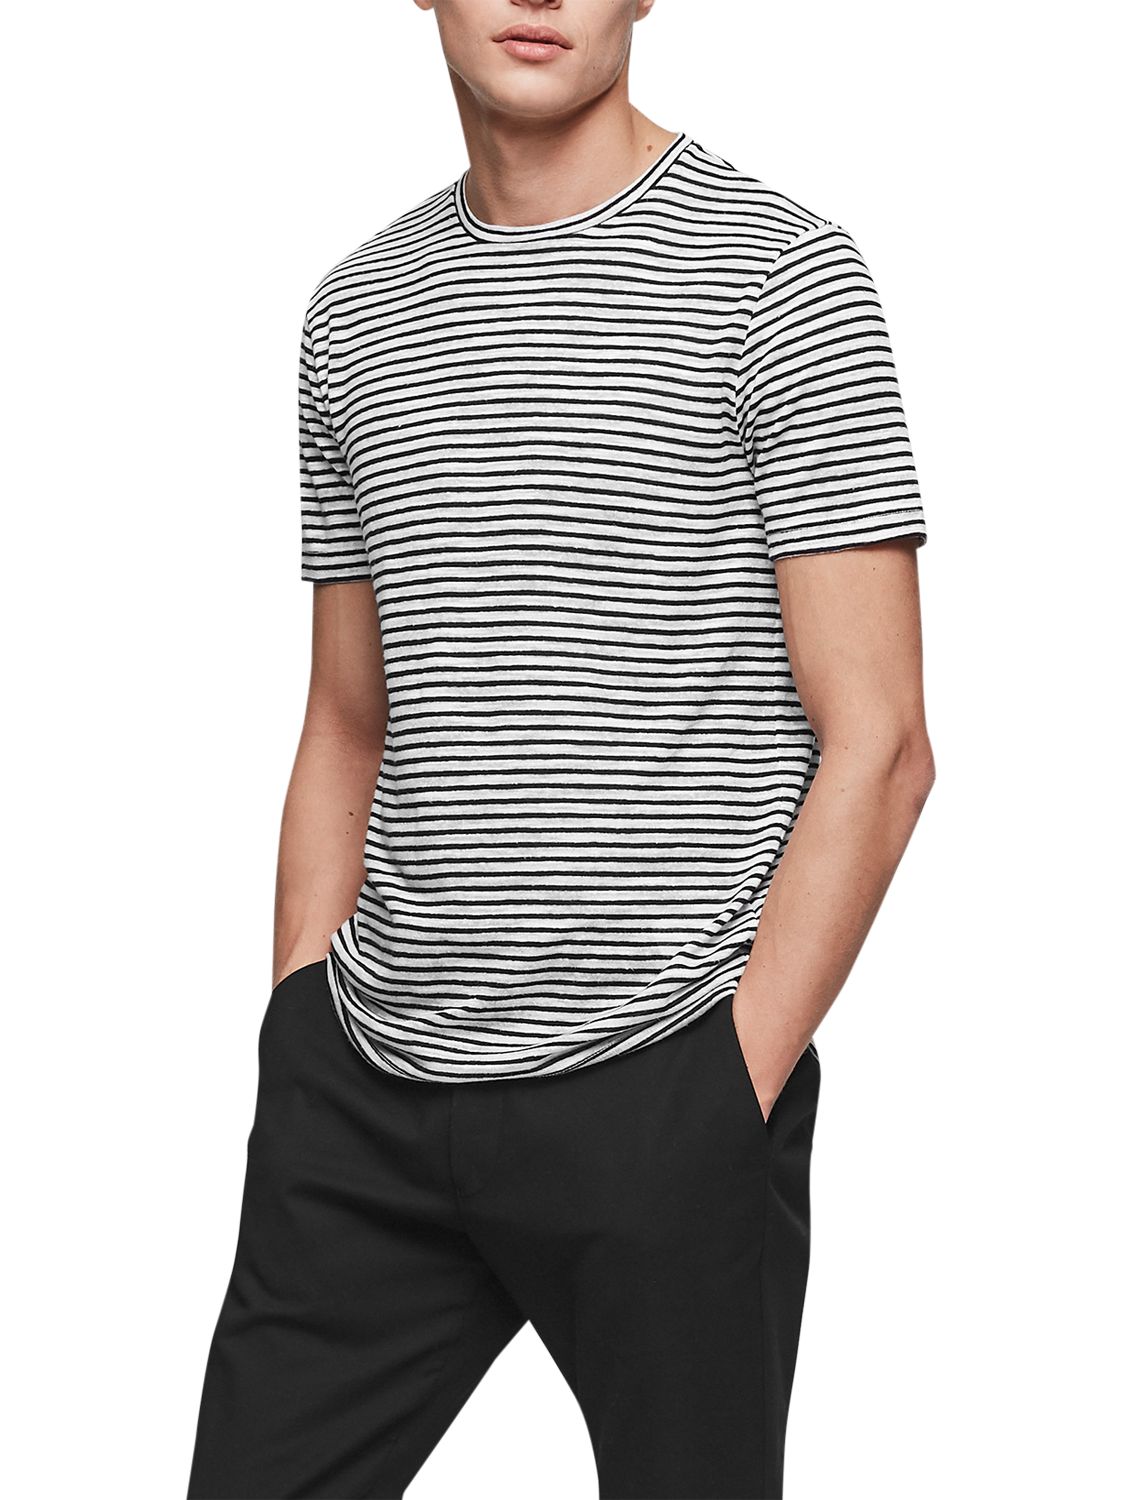 Reiss Dobcot Linen Blend Stripe T-Shirt, Ecru, XXL